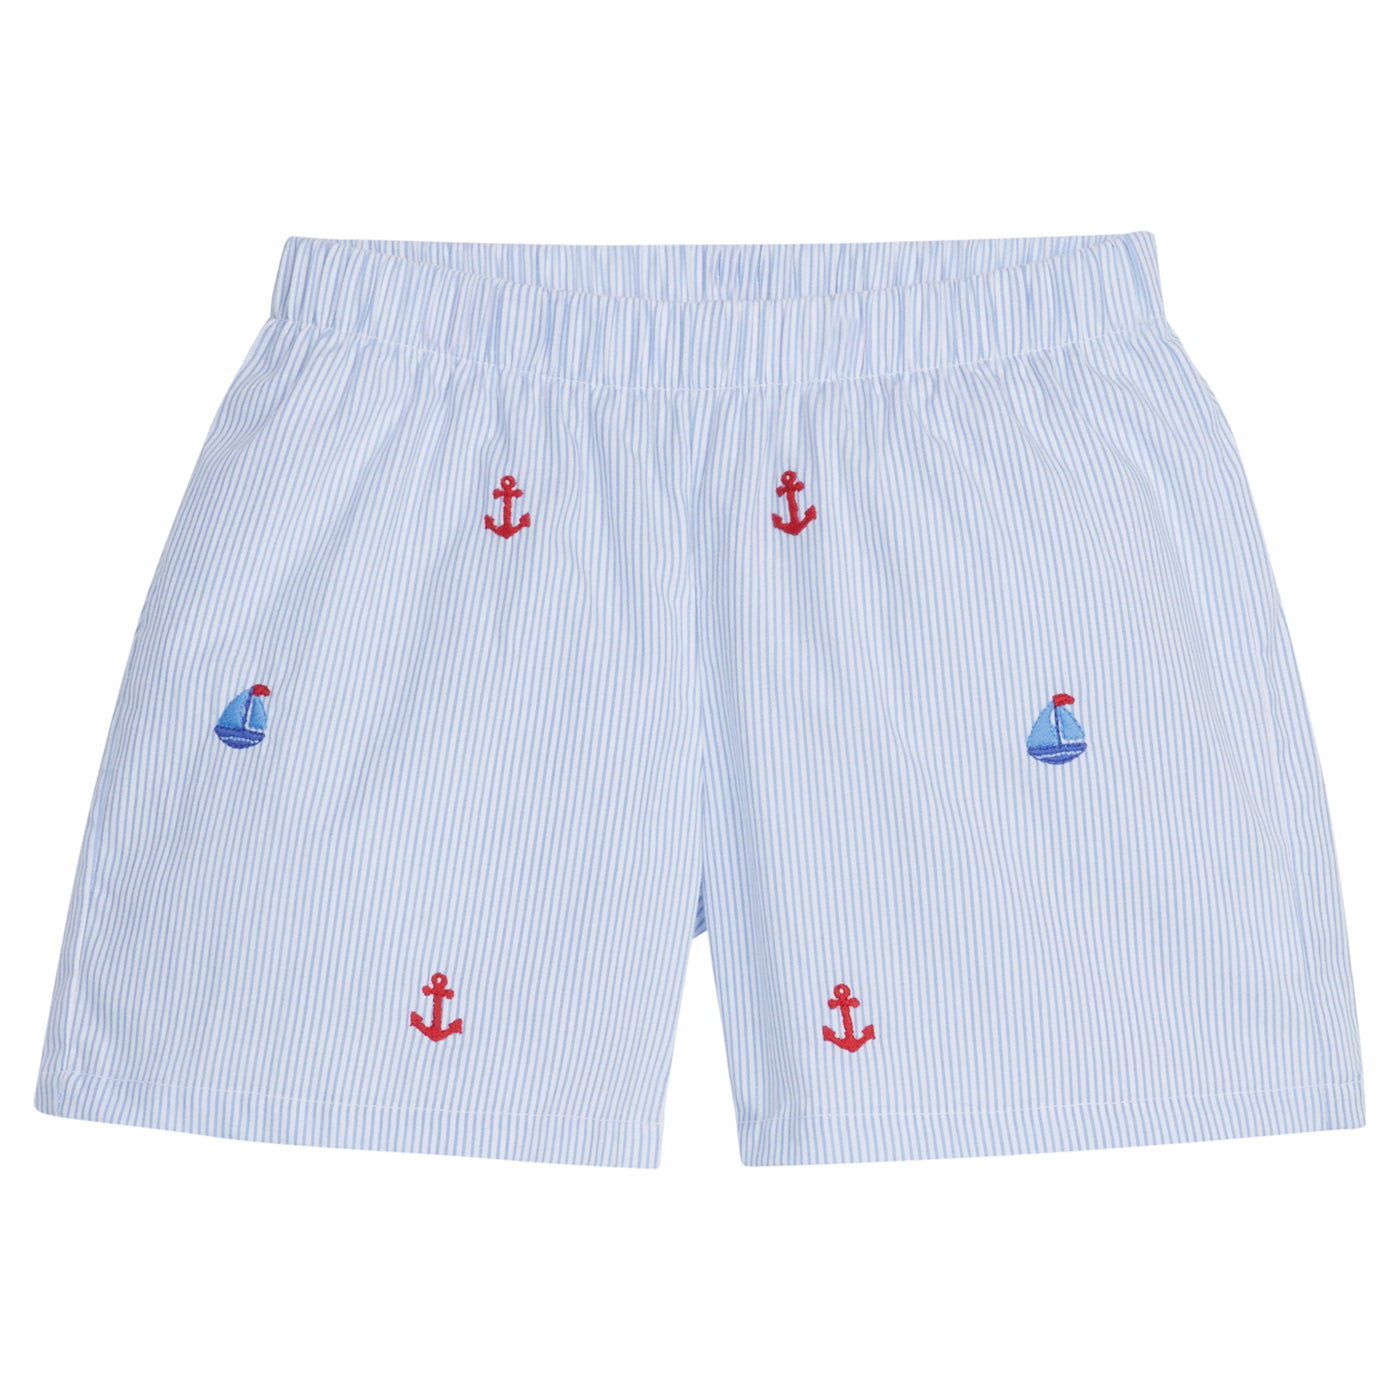 Embroidered Basic Short - Nautical